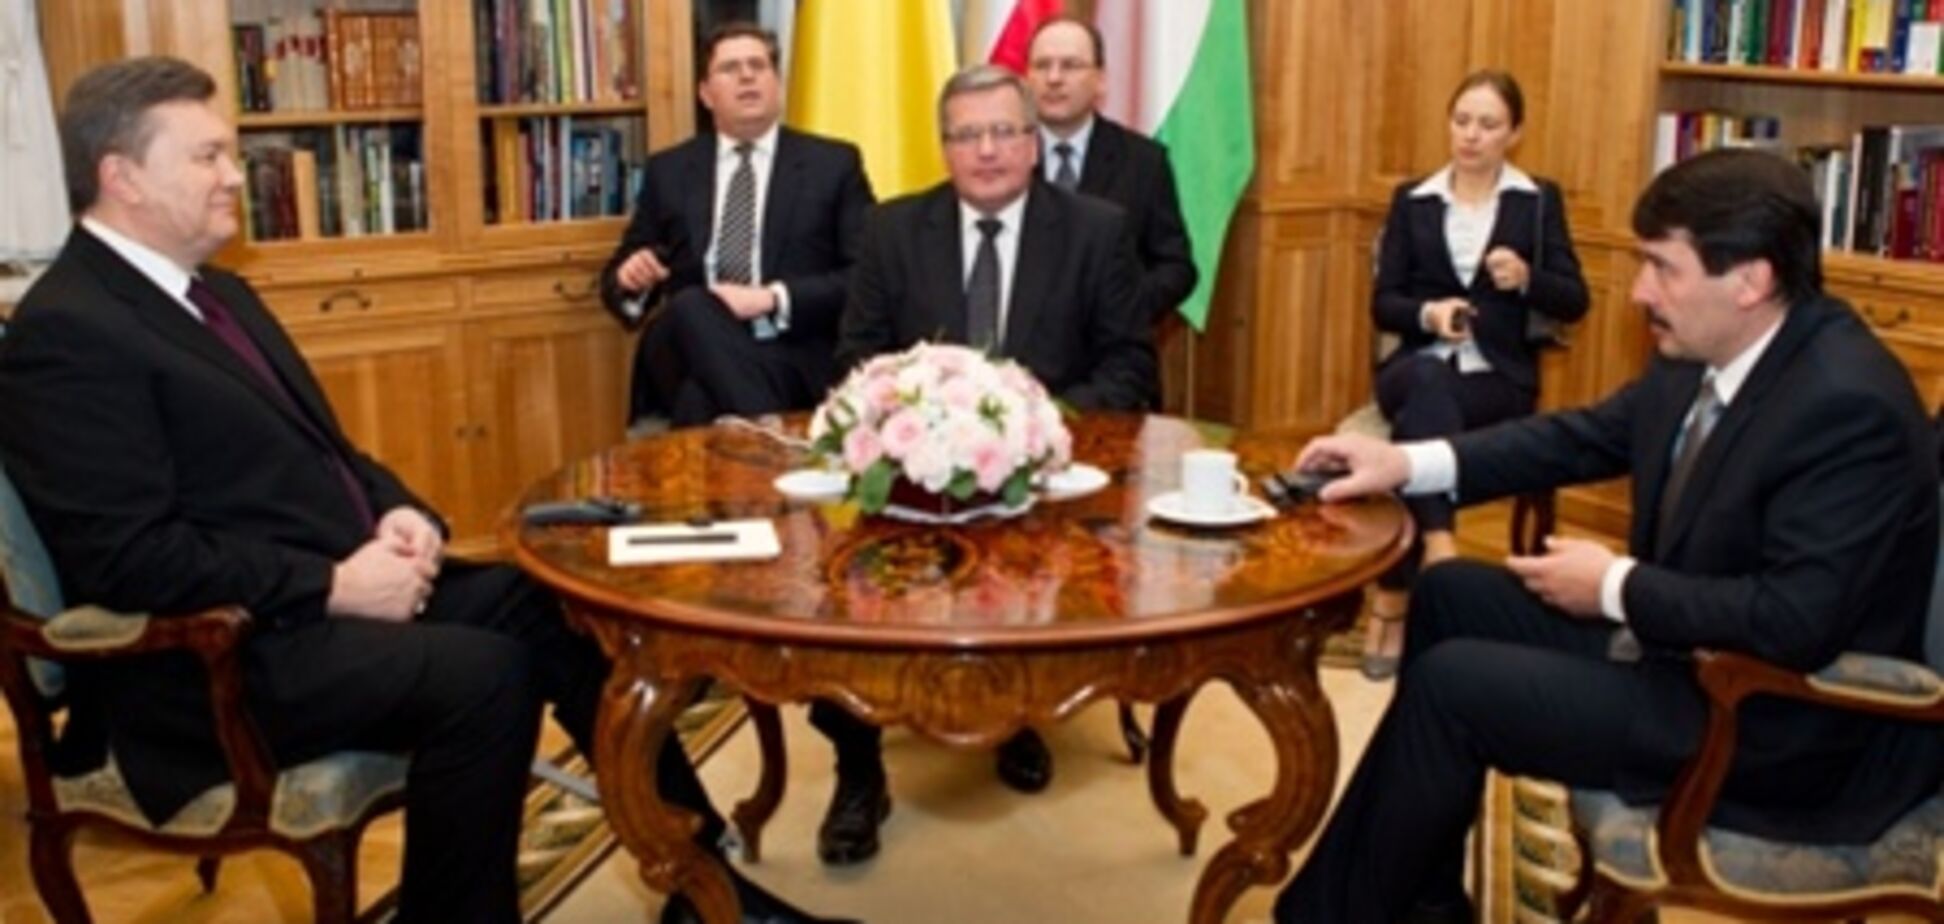 Янукович, Коморовський та Адер провели зустріч і поїхали на матч Україна-Польща 